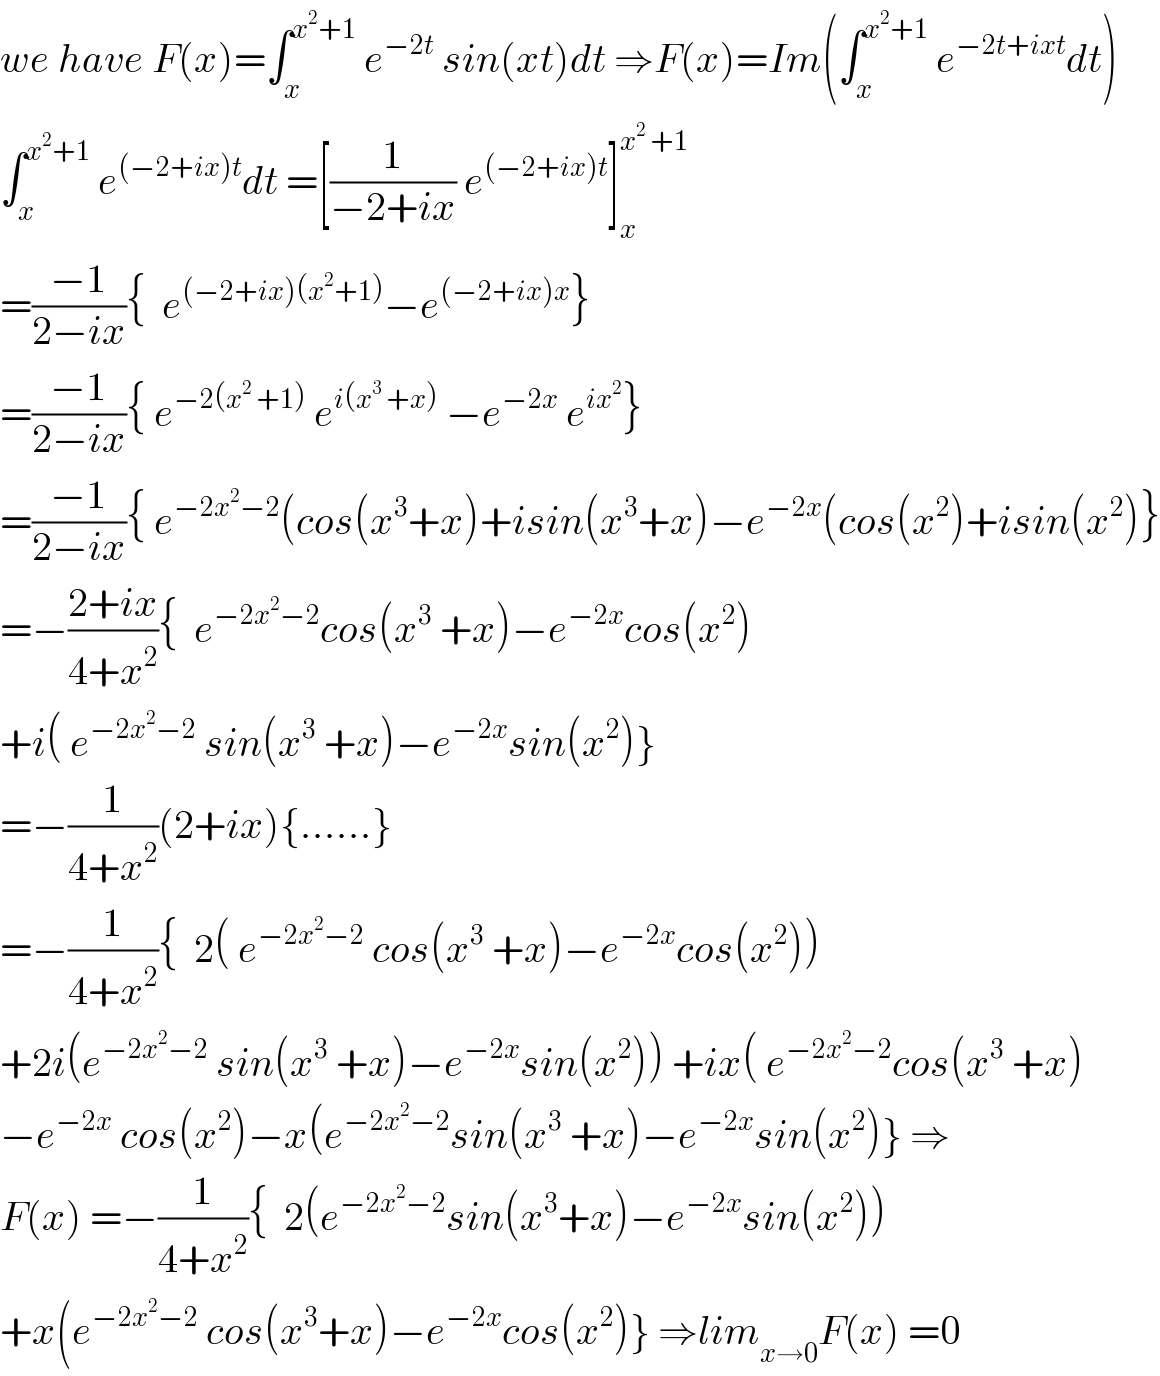 we have F(x)=∫_x ^(x^2 +1)  e^(−2t)  sin(xt)dt ⇒F(x)=Im(∫_x ^(x^2 +1)  e^(−2t+ixt) dt)  ∫_x ^(x^2 +1)  e^((−2+ix)t) dt =[(1/(−2+ix)) e^((−2+ix)t) ]_x ^(x^2  +1)   =((−1)/(2−ix)){  e^((−2+ix)(x^2 +1)) −e^((−2+ix)x) }  =((−1)/(2−ix)){ e^(−2(x^2  +1))  e^(i(x^3  +x))  −e^(−2x)  e^(ix^2 ) }  =((−1)/(2−ix)){ e^(−2x^2 −2) (cos(x^3 +x)+isin(x^3 +x)−e^(−2x) (cos(x^2 )+isin(x^2 )}  =−((2+ix)/(4+x^2 )){  e^(−2x^2 −2) cos(x^3  +x)−e^(−2x) cos(x^2 )  +i( e^(−2x^2 −2)  sin(x^3  +x)−e^(−2x) sin(x^2 )}  =−(1/(4+x^2 ))(2+ix){......}  =−(1/(4+x^2 )){  2( e^(−2x^2 −2)  cos(x^3  +x)−e^(−2x) cos(x^2 ))  +2i(e^(−2x^2 −2)  sin(x^3  +x)−e^(−2x) sin(x^2 )) +ix( e^(−2x^2 −2) cos(x^3  +x)  −e^(−2x)  cos(x^2 )−x(e^(−2x^2 −2) sin(x^3  +x)−e^(−2x) sin(x^2 )} ⇒  F(x) =−(1/(4+x^2 )){  2(e^(−2x^2 −2) sin(x^3 +x)−e^(−2x) sin(x^2 ))  +x(e^(−2x^2 −2)  cos(x^3 +x)−e^(−2x) cos(x^2 )} ⇒lim_(x→0) F(x) =0  